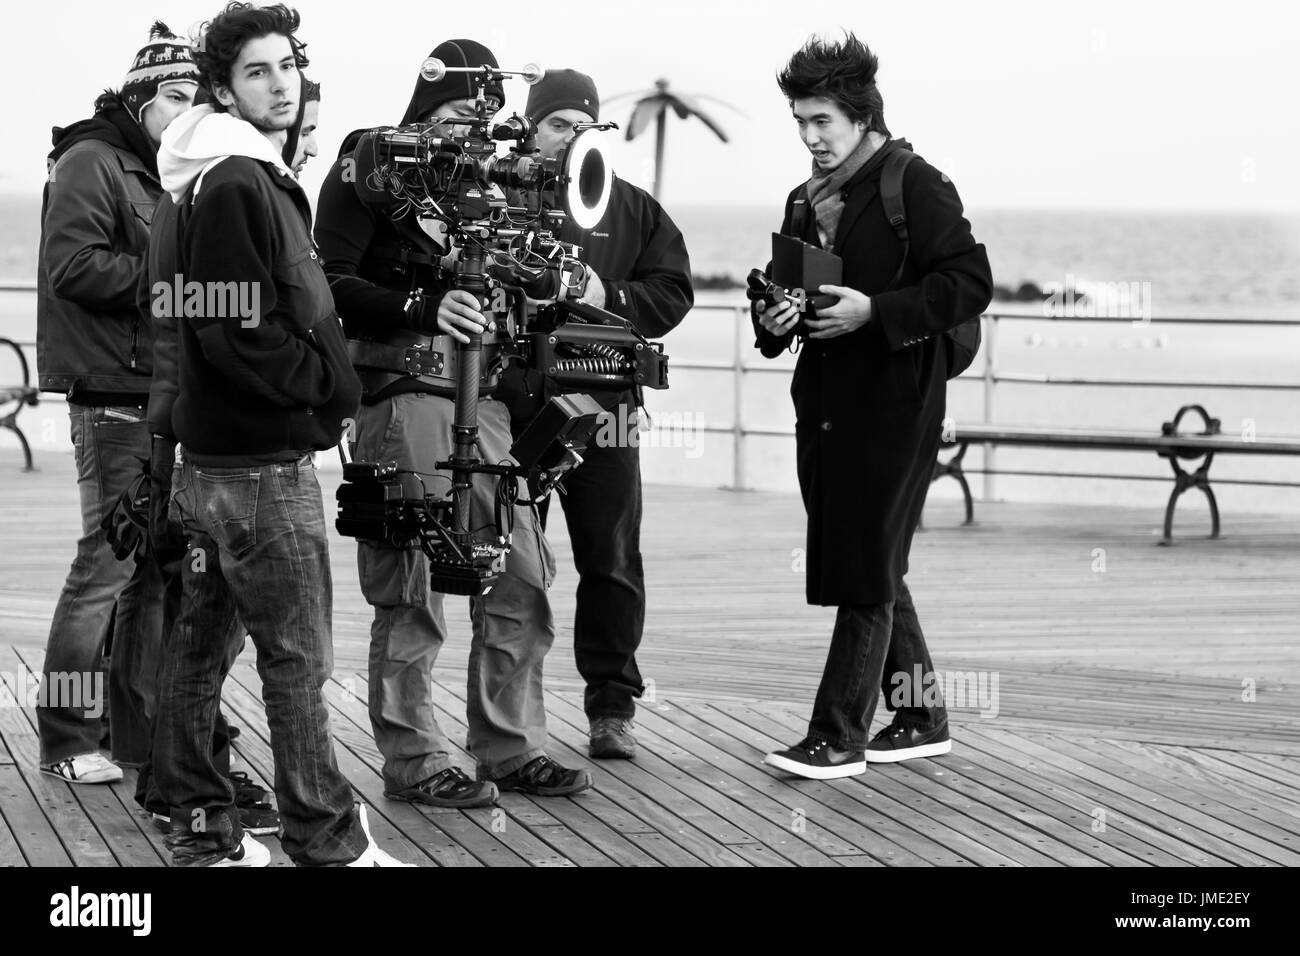 NEW YORK CITY-NOV 2010: una troupe cinematografica lavorando sulla posizione a Coney Island Boardwalk. Immagine in bianco e nero. Foto Stock